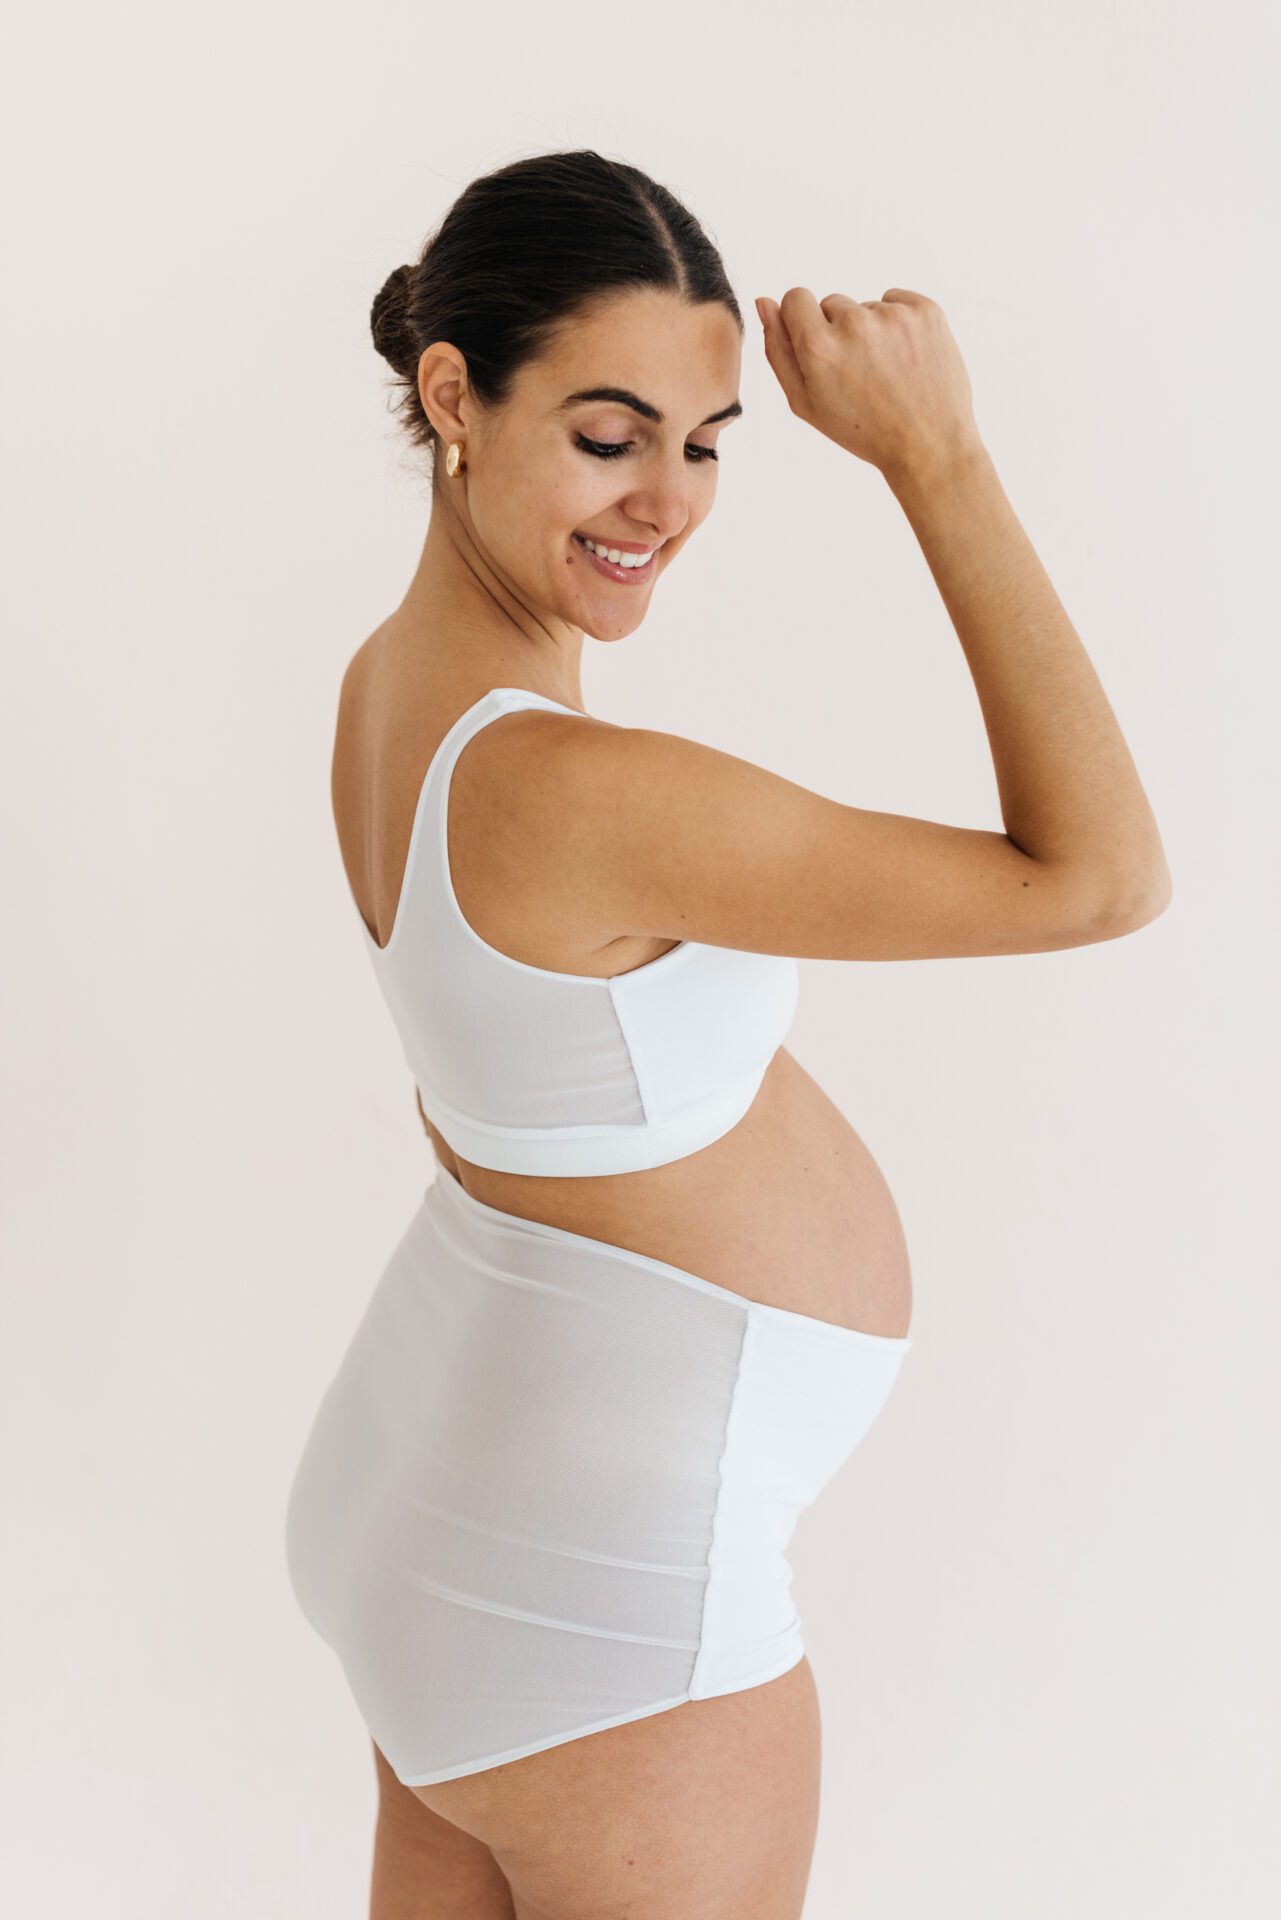 Buy online White Cotton Maternitynursing Bra from lingerie for